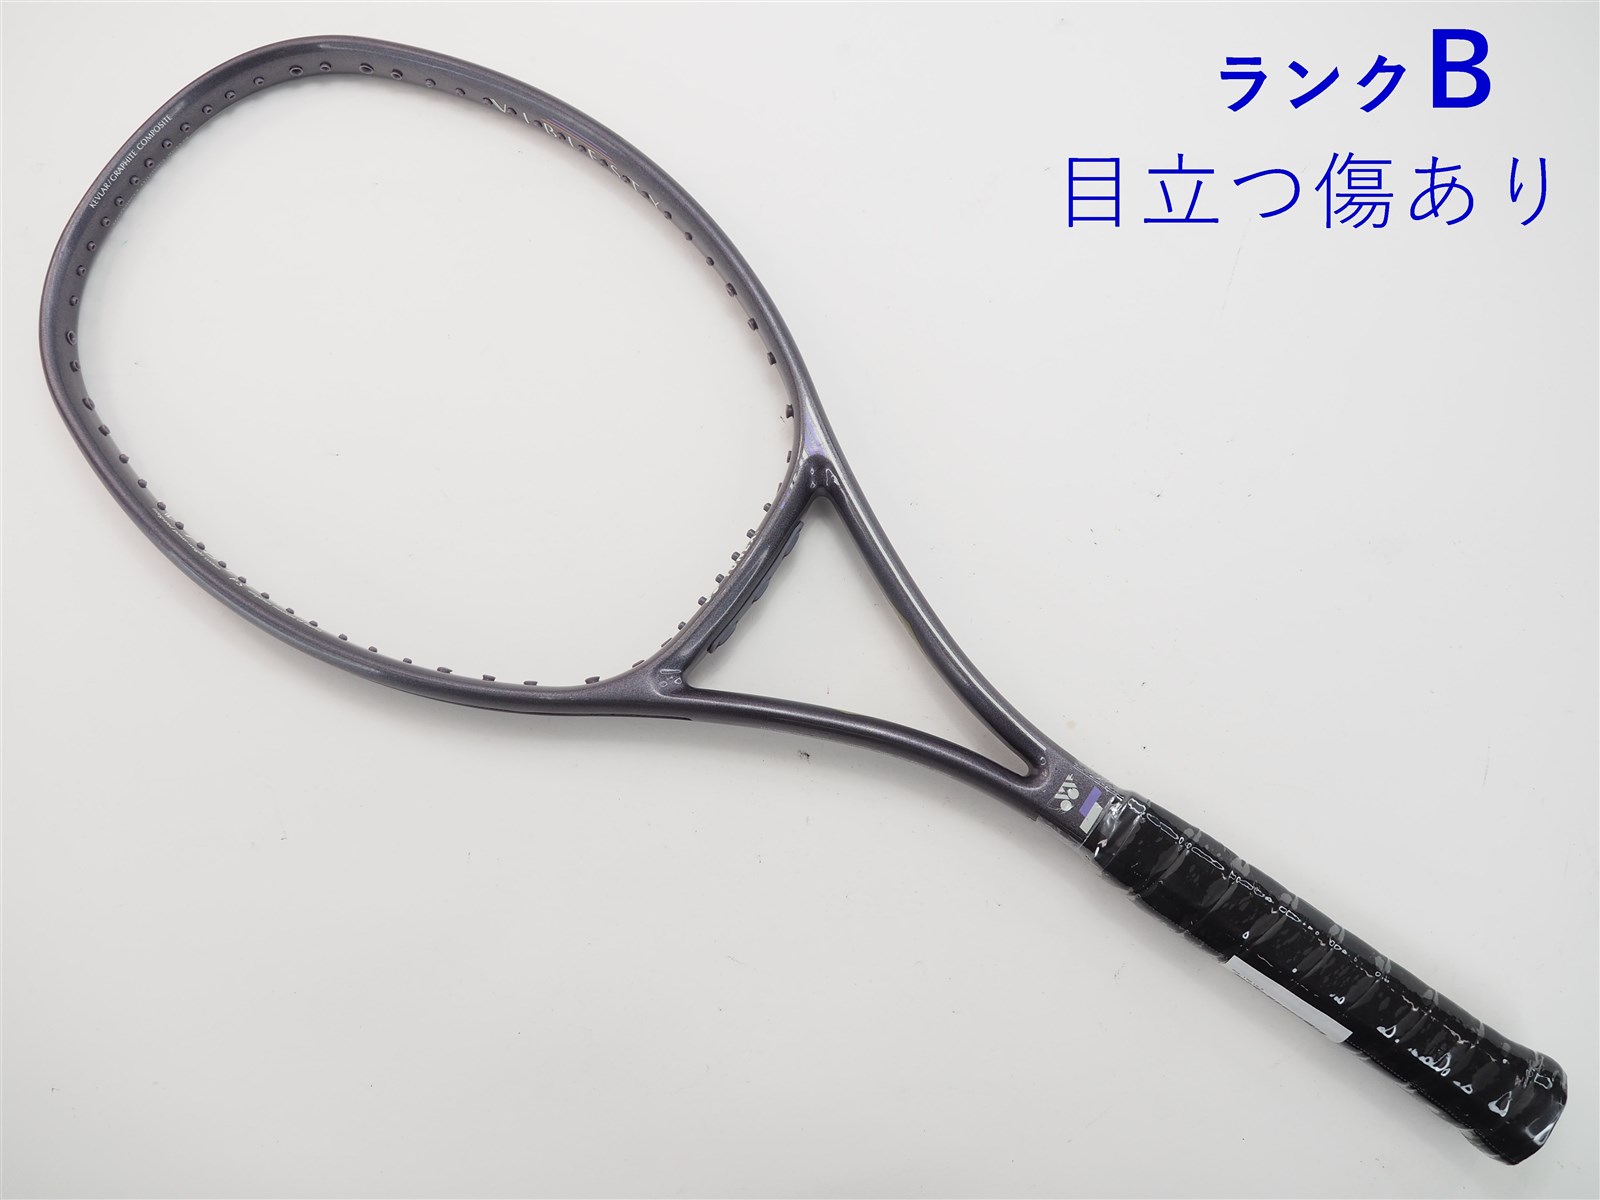 【中古】ヨネックス RQ-170YONEX RQ-170(UL2)【中古 テニスラケット】の通販・販売| ヨネックス| テニスサポートセンターへ